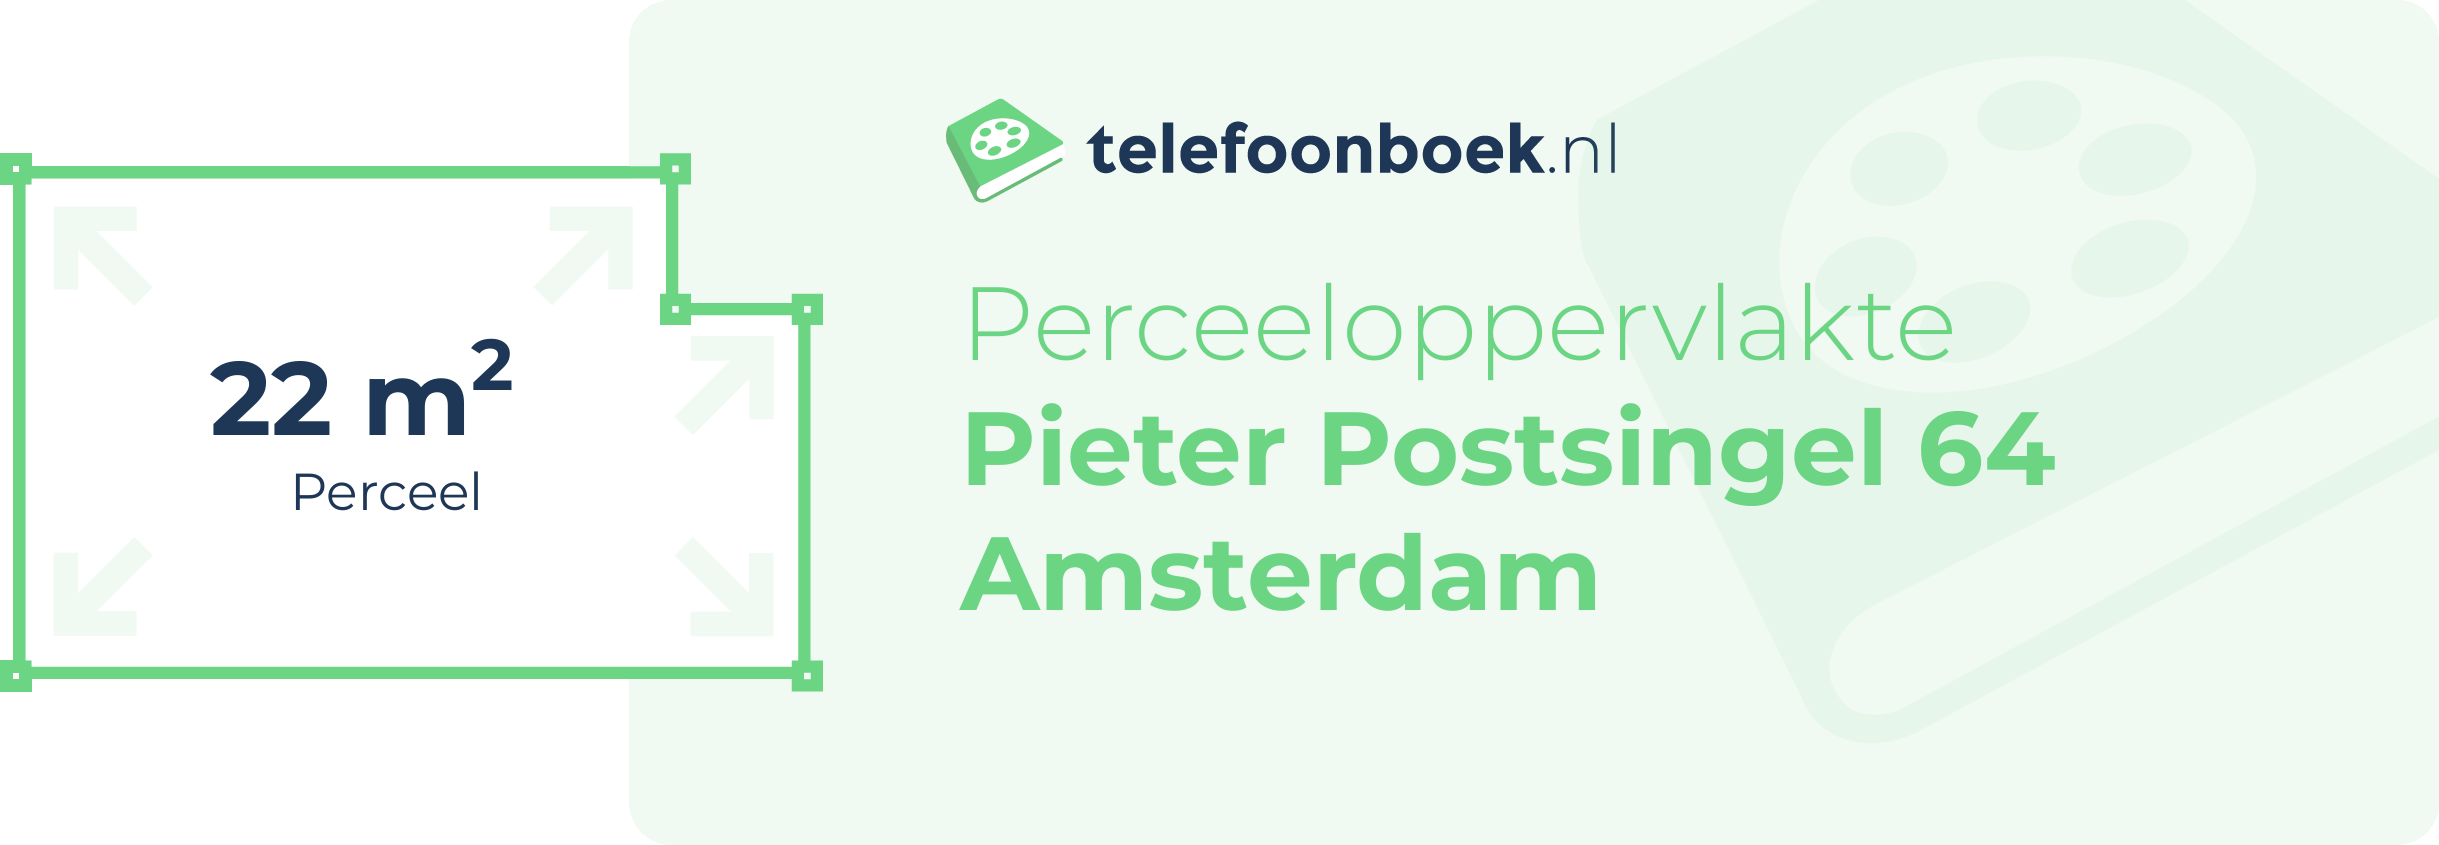 Perceeloppervlakte Pieter Postsingel 64 Amsterdam